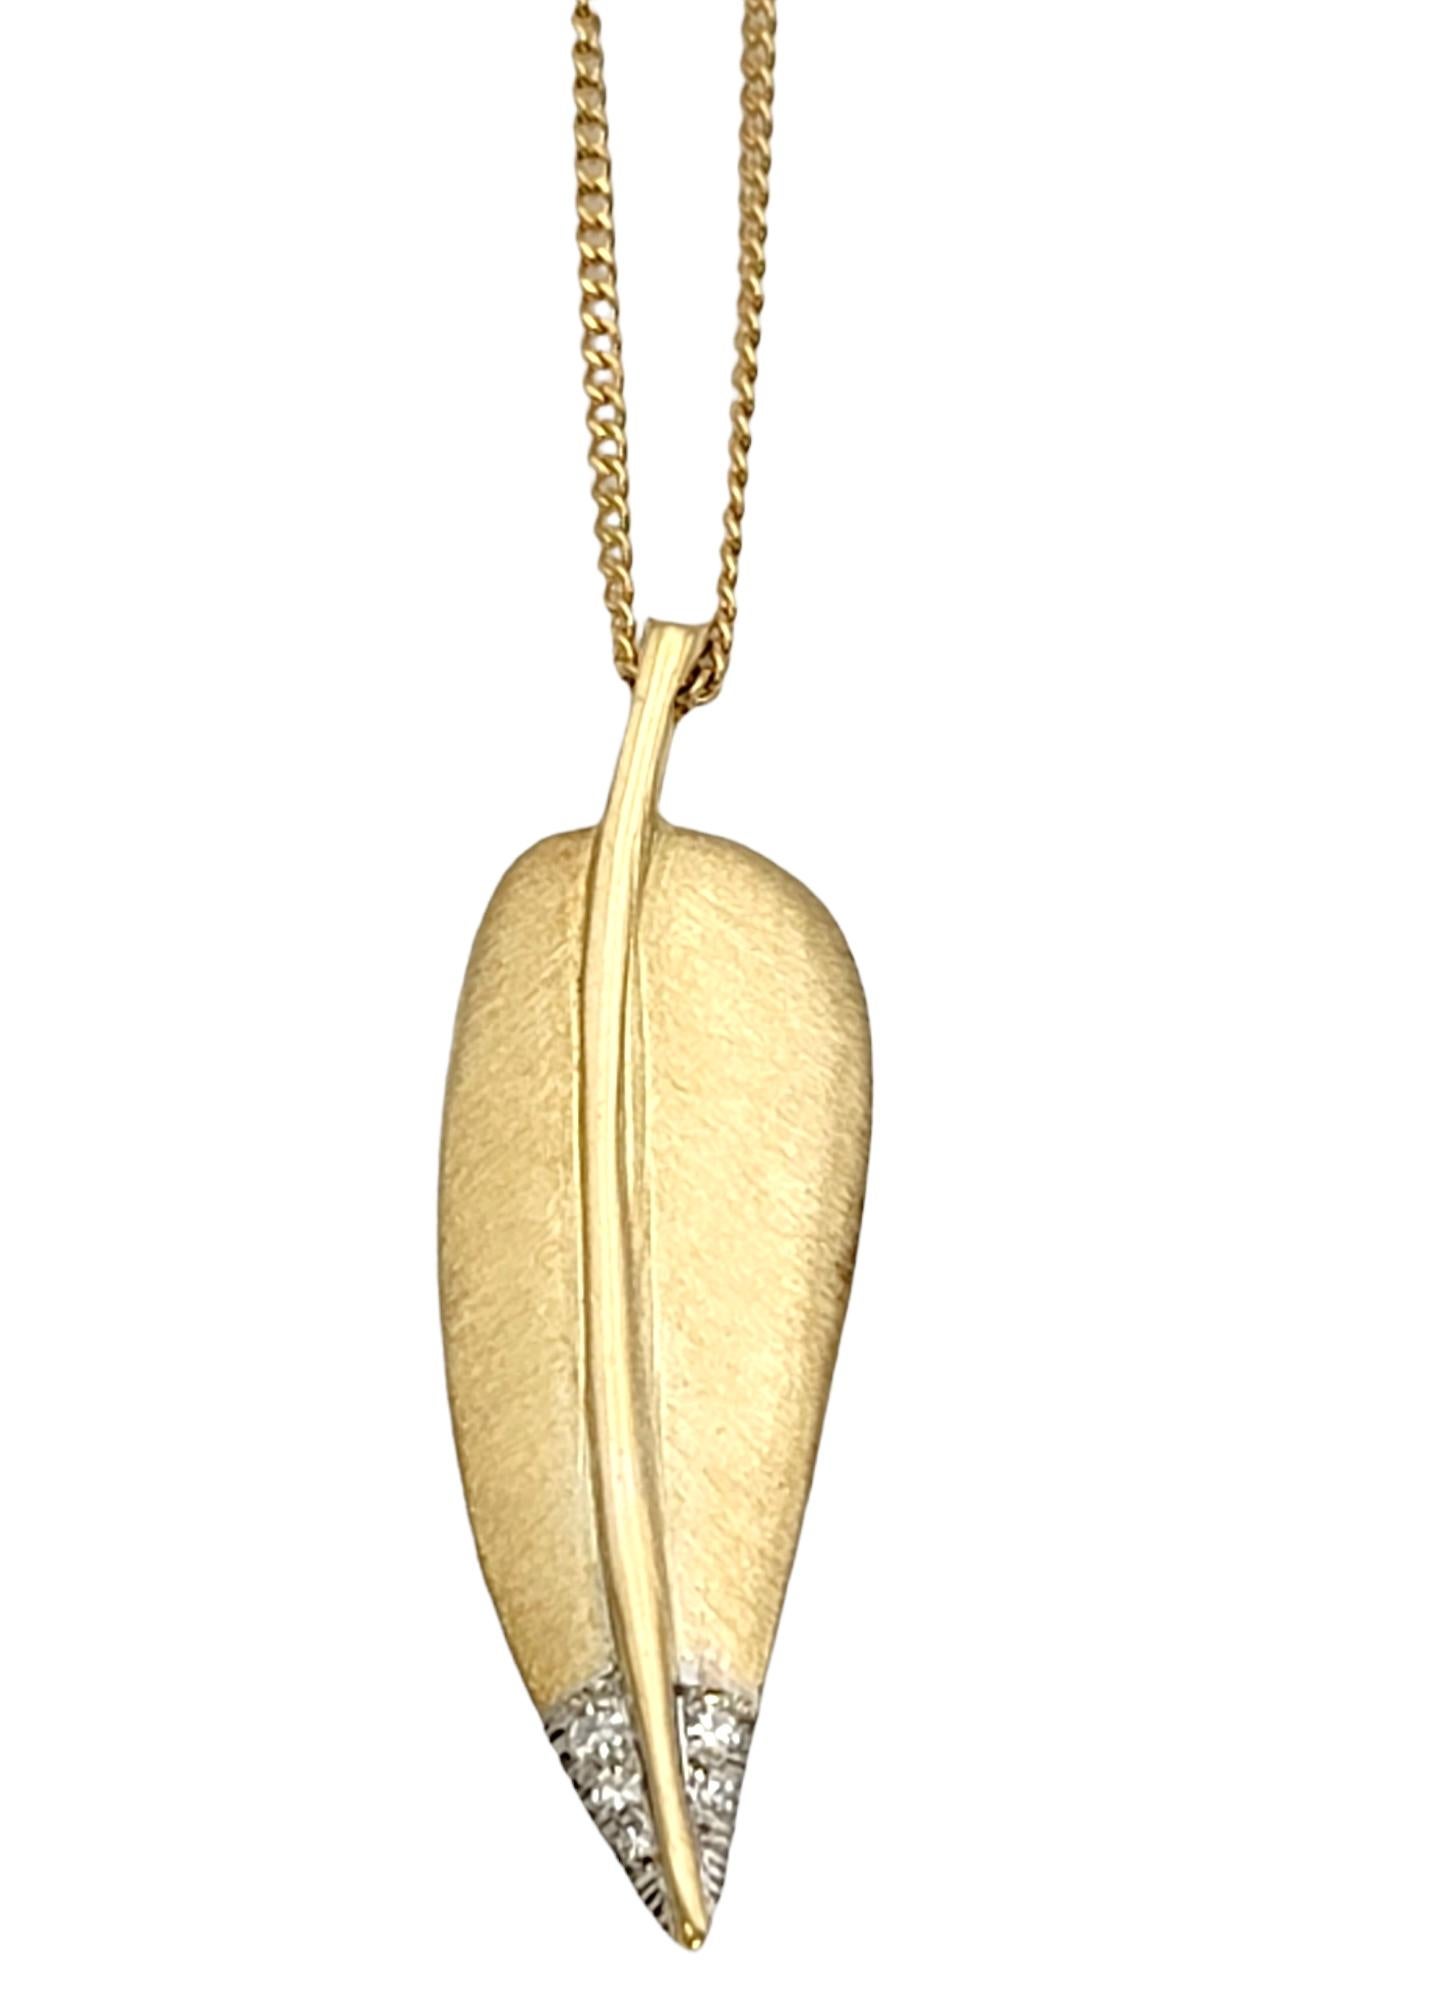 Wunderschöne Vintage-Halskette mit Feder-Anhänger, entworfen von Angela Cummings für Tiffany & Co. Dieses wunderschöne Schmuckstück aus 18 Karat Gelbgold ist schlicht, aber wunderschön am Hals.  Die an einer zarten Kette befestigte Feder ist in